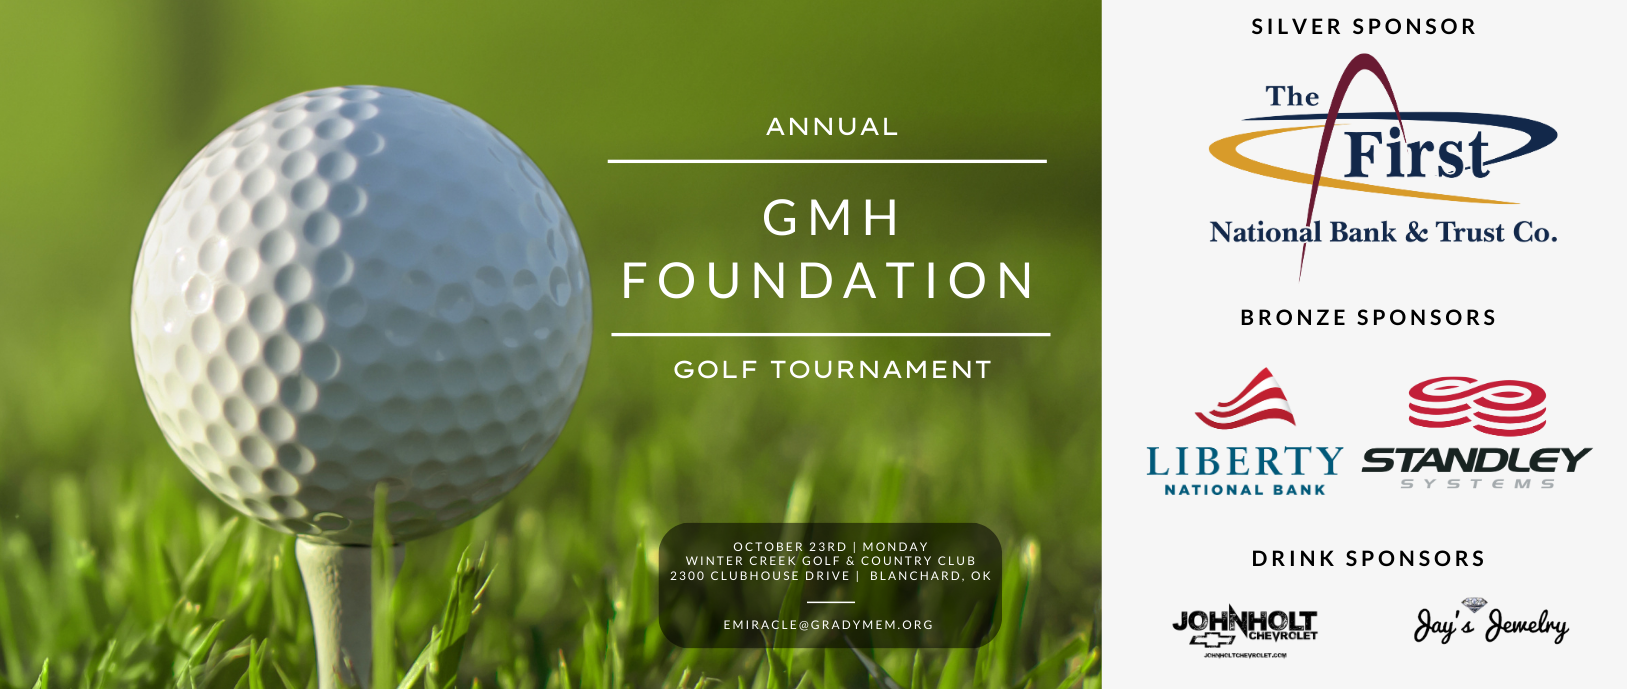 Grady Memorial Hospital Foundation Golf Tournament